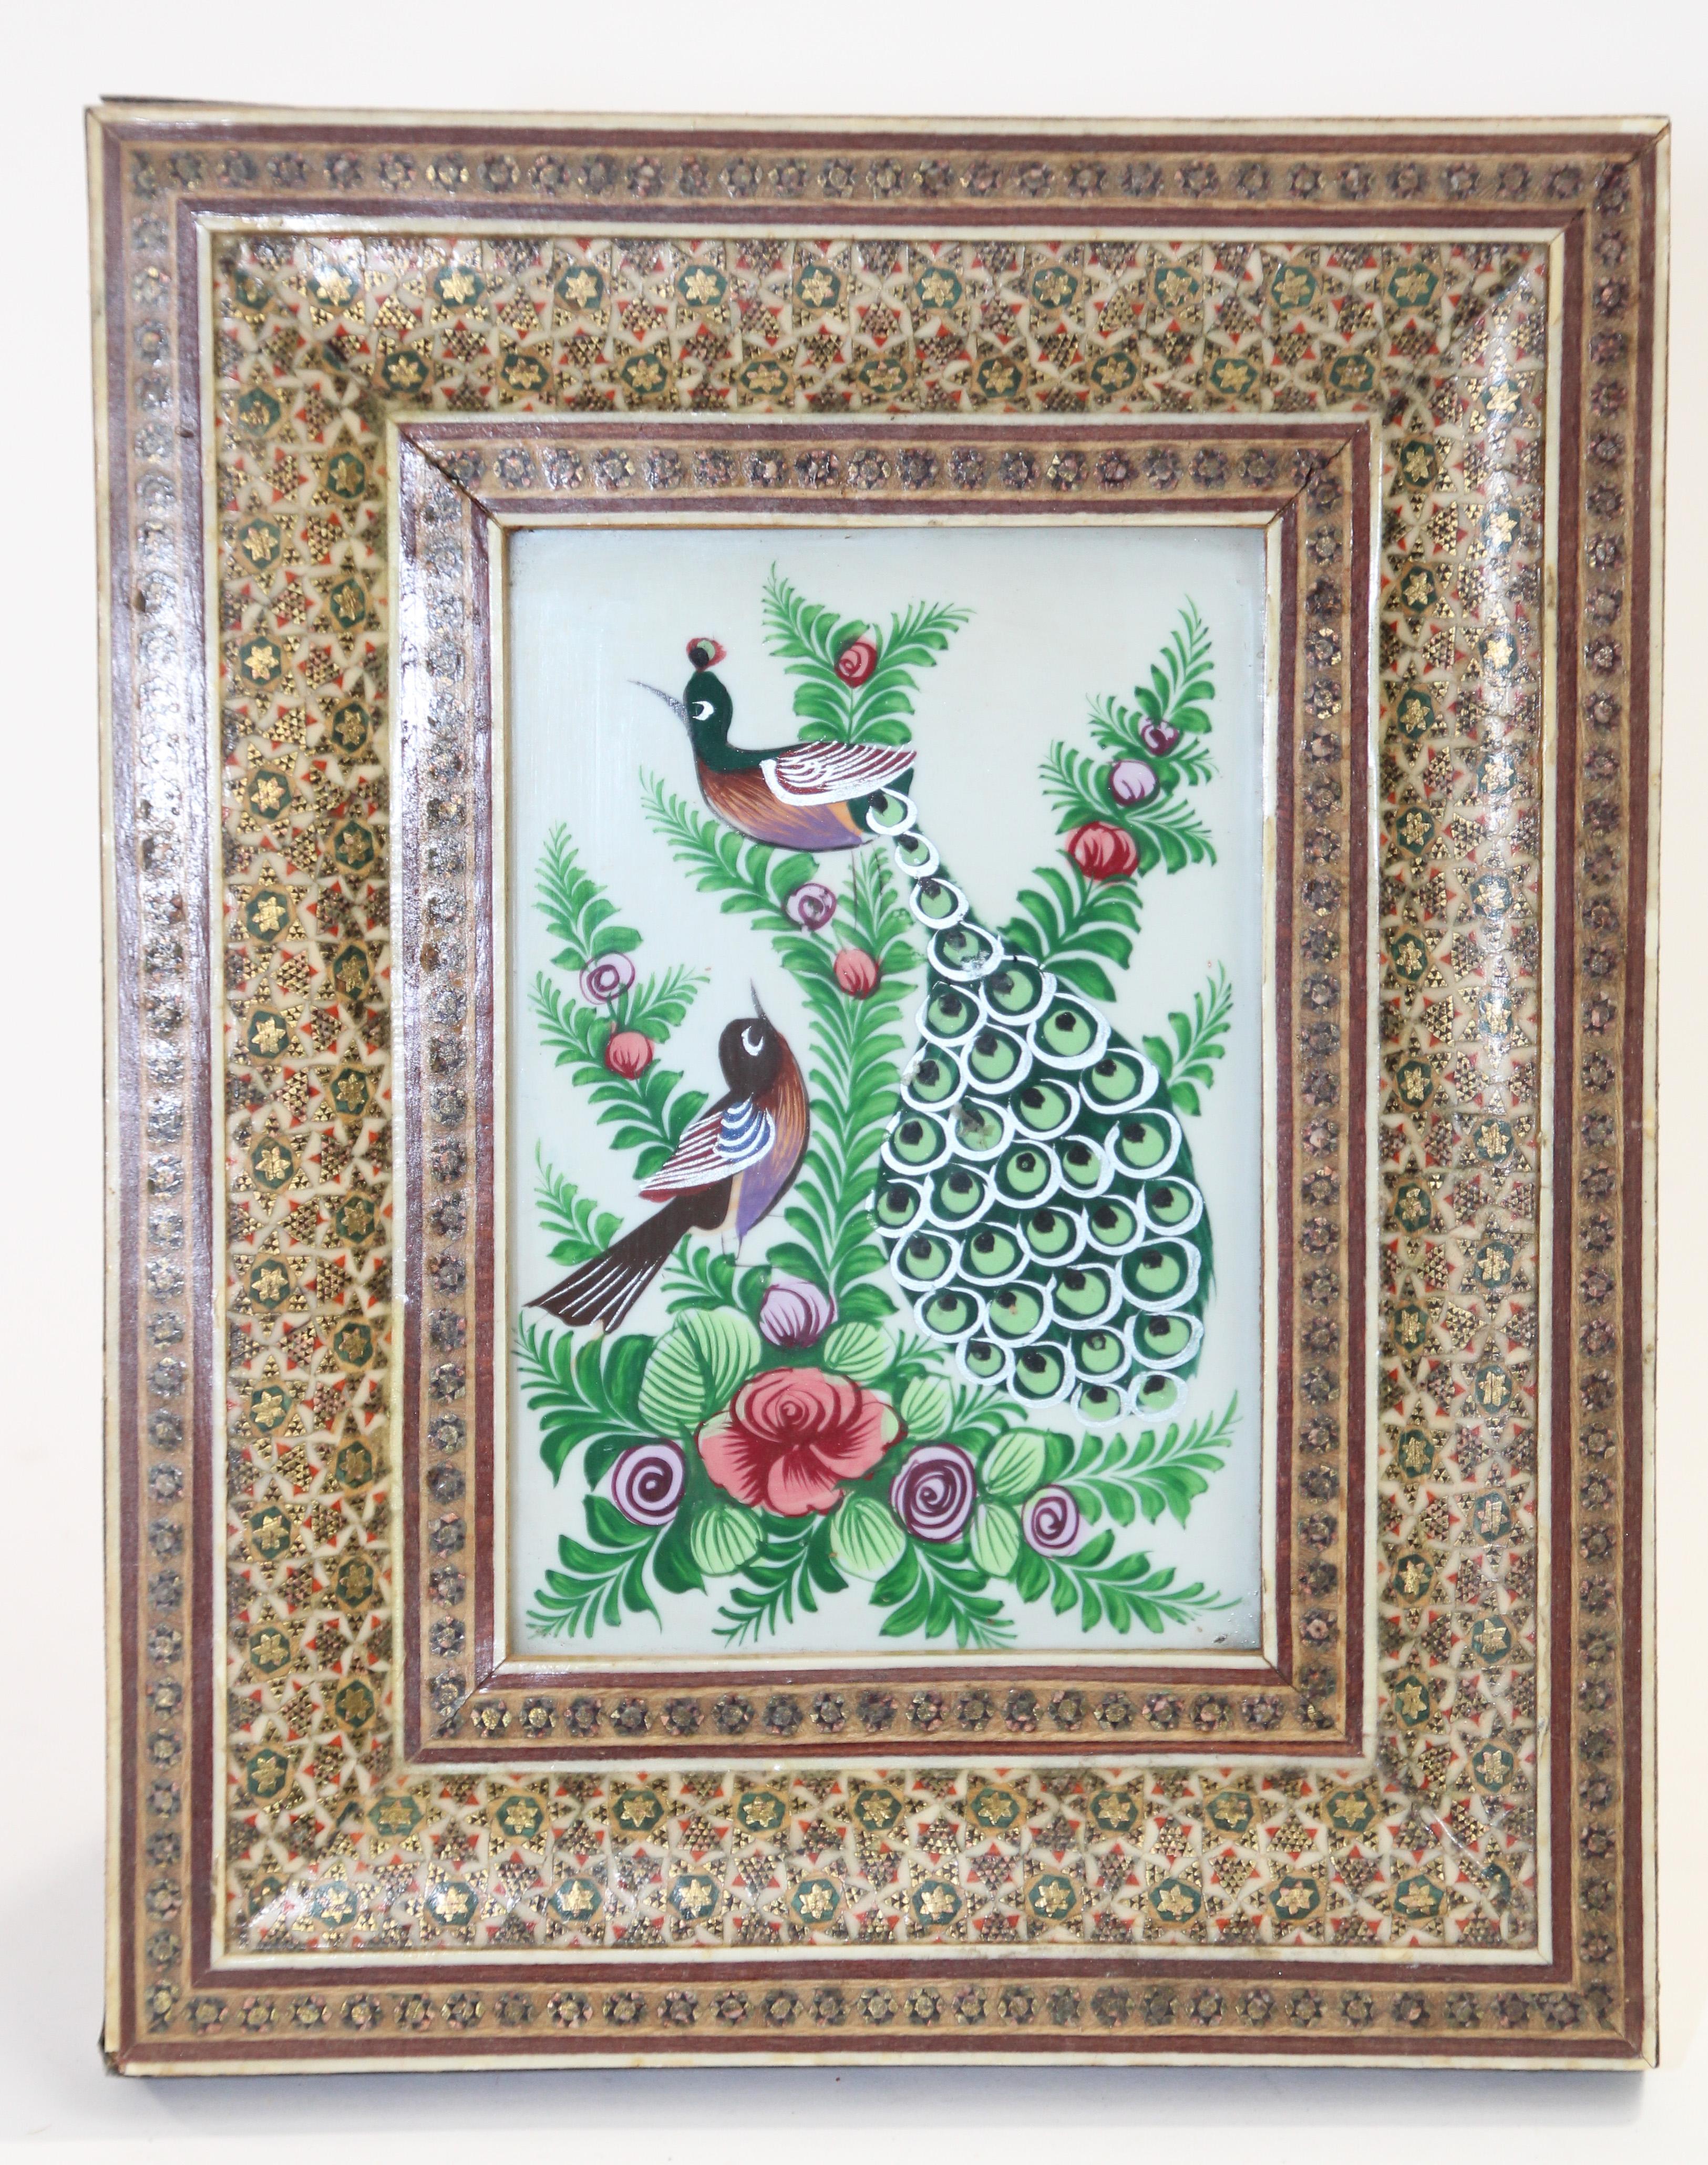 Tableau miniature du Moyen-Orient représentant des paons, encadré dans un cadre mauresque incrusté de micro-mosaïques.
Peinture miniature du Moyen-Orient sur coquillage, peinture très fine et colorée dans une
cadre en mosaïque incrustée avec un